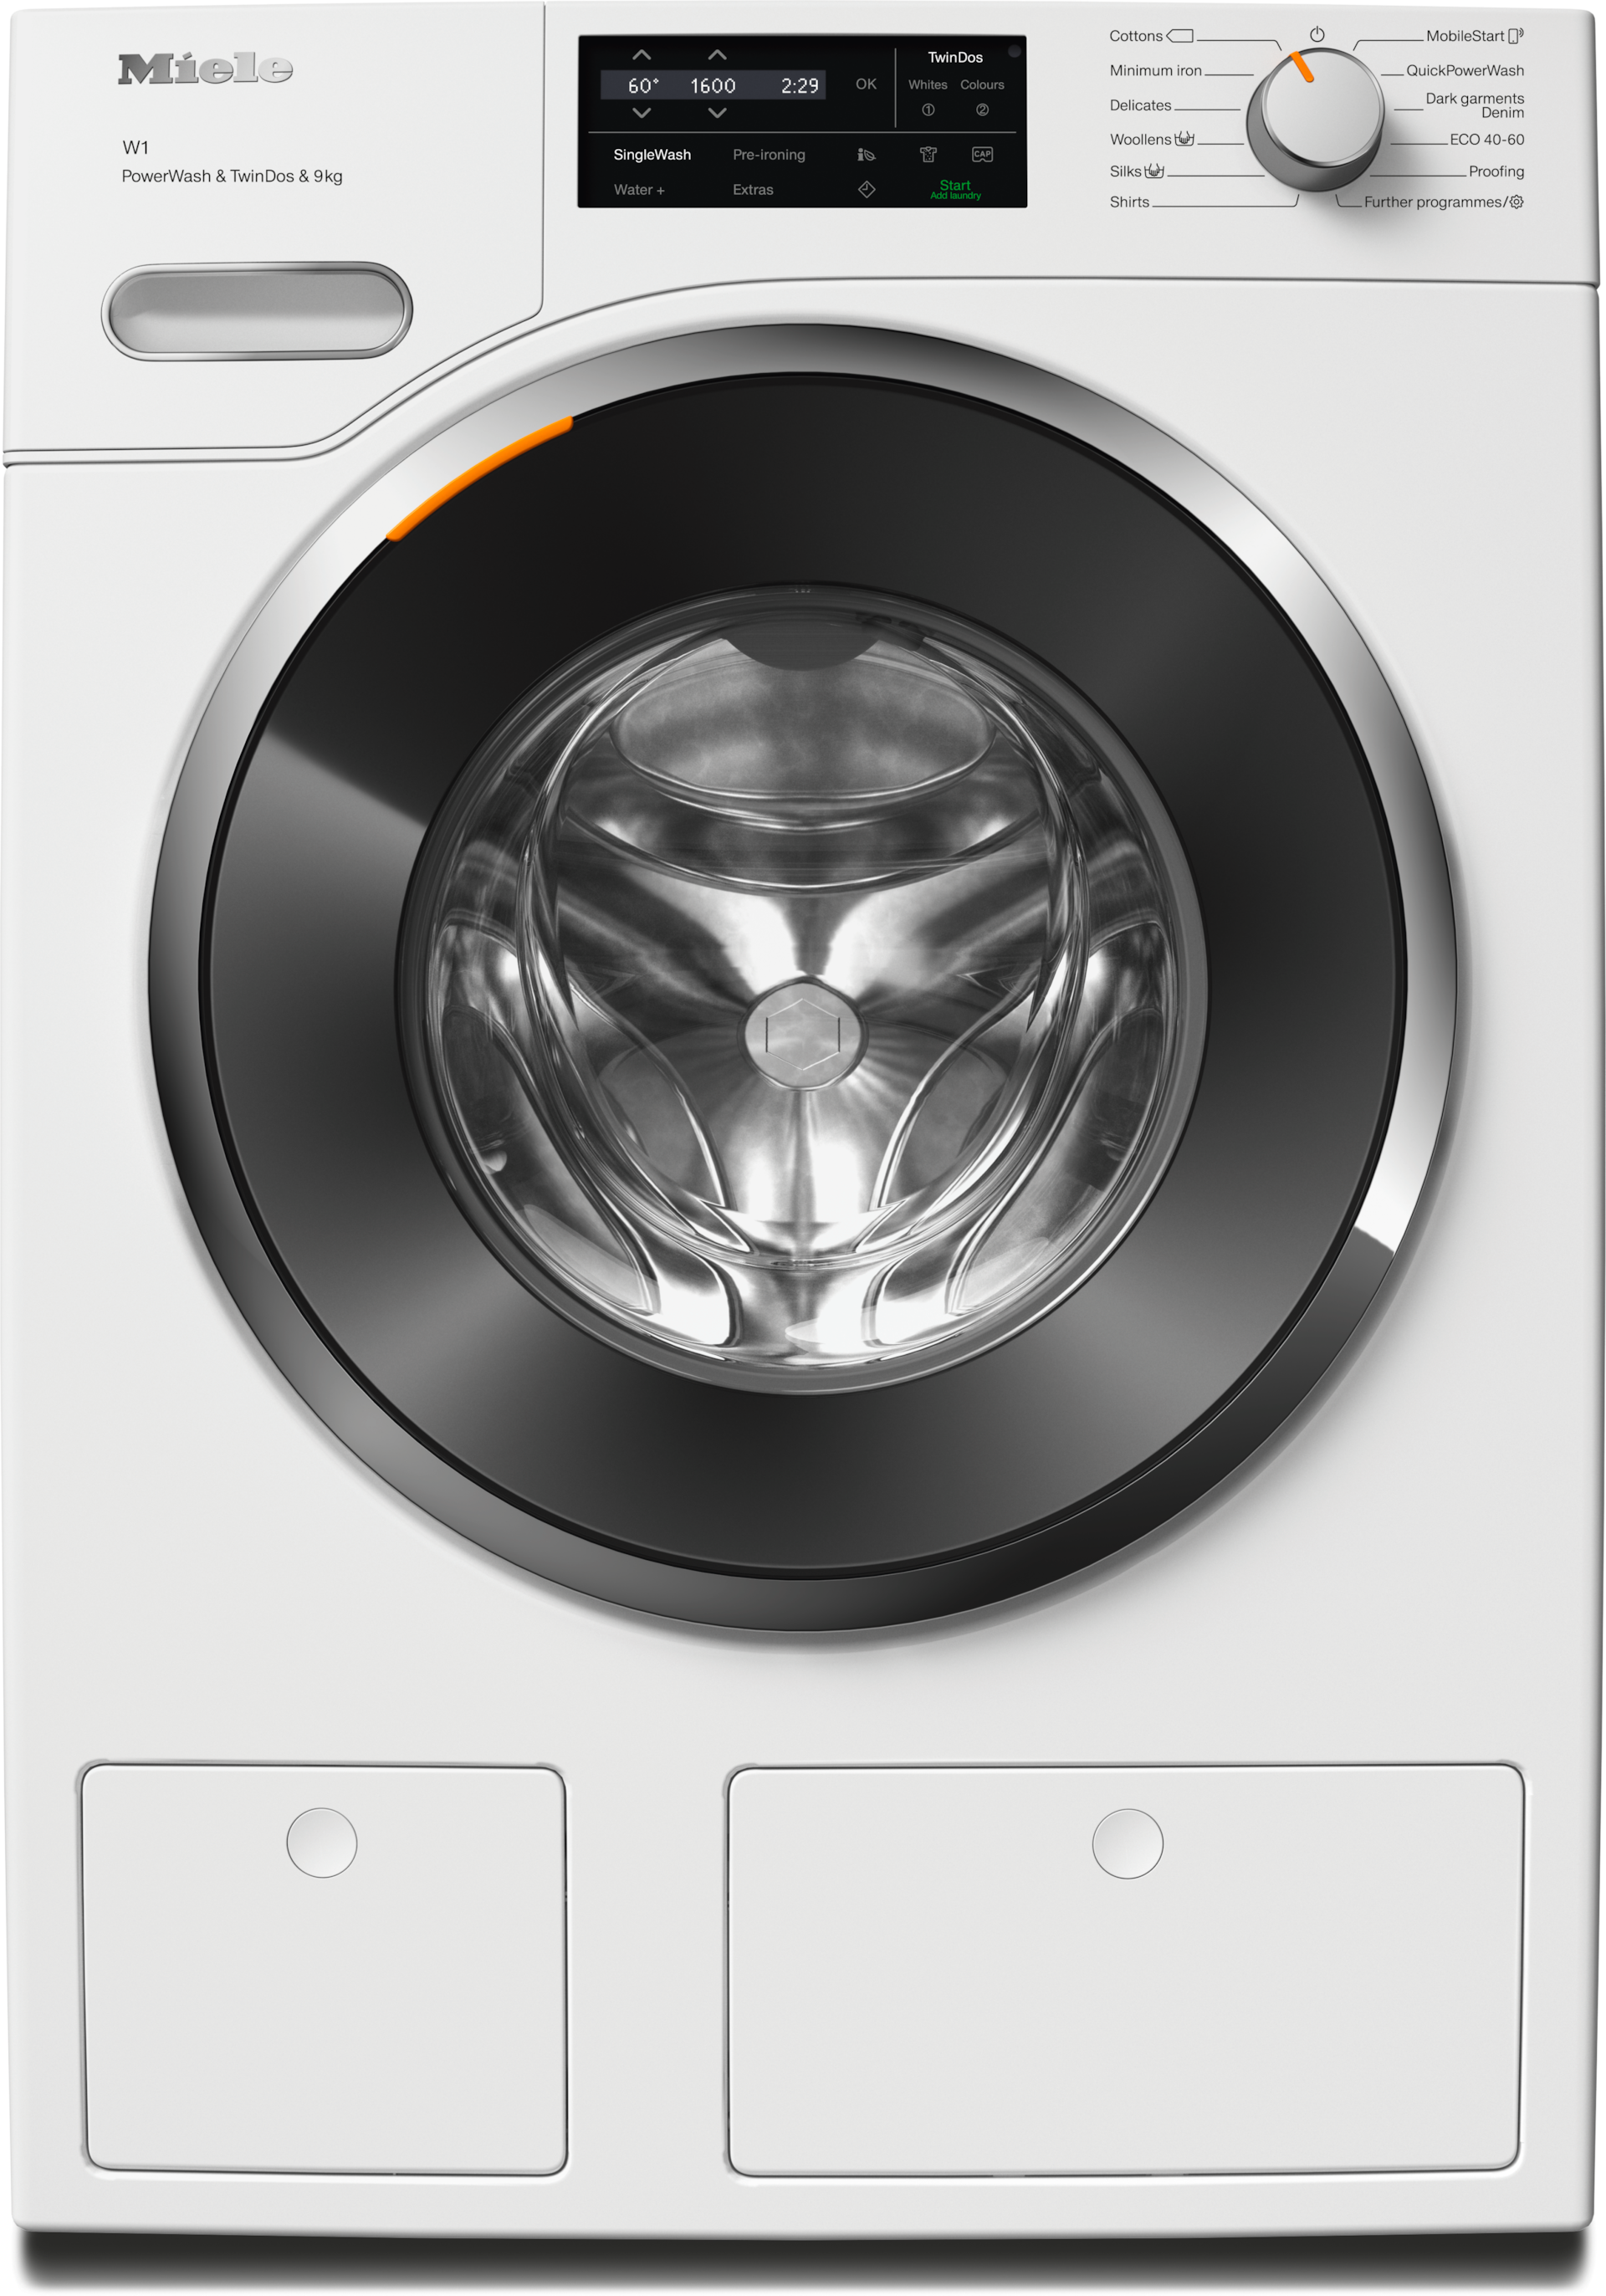 Washing machines - WWI860 WCS PWash&TDos&9kg Lotus white - 1